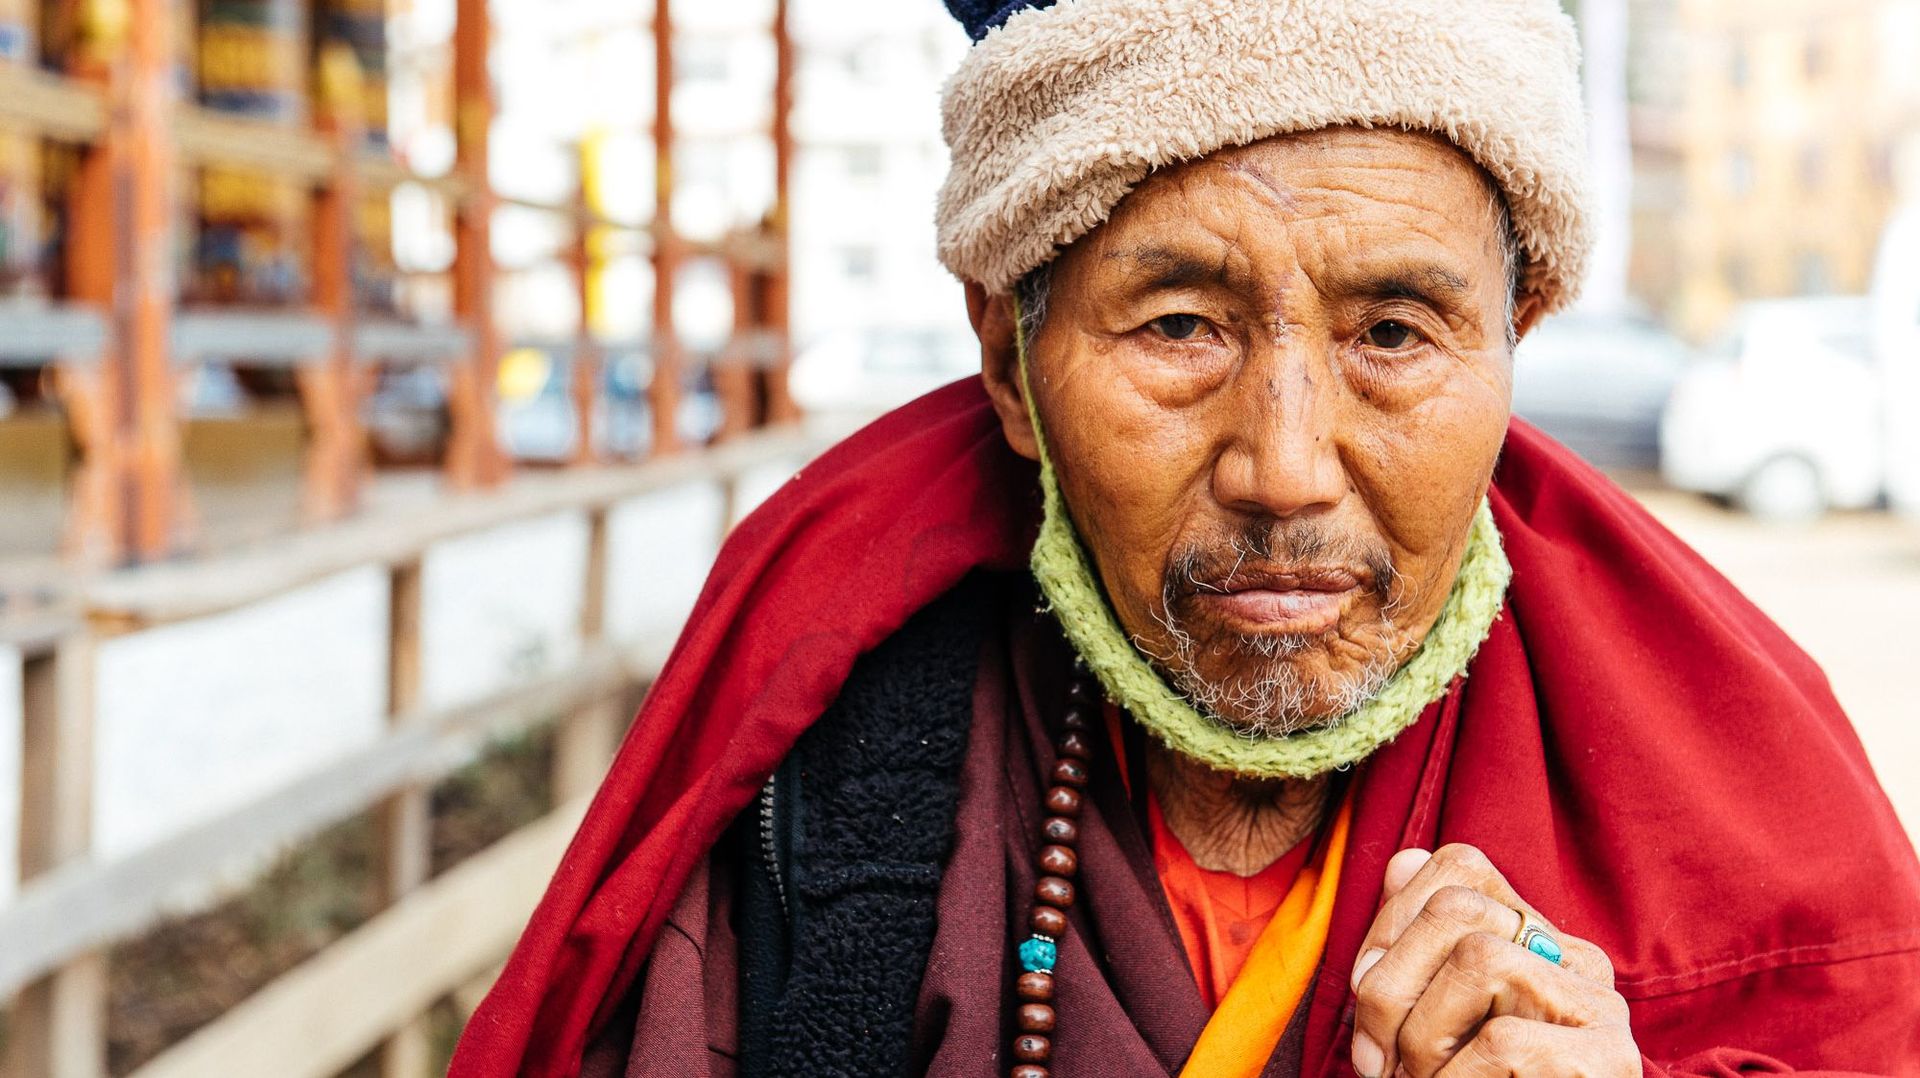 Faire le tour des lieux sacrés en faisant tourner les moulins à prières, les Bhoutanais soignent ainsi leur karma. 